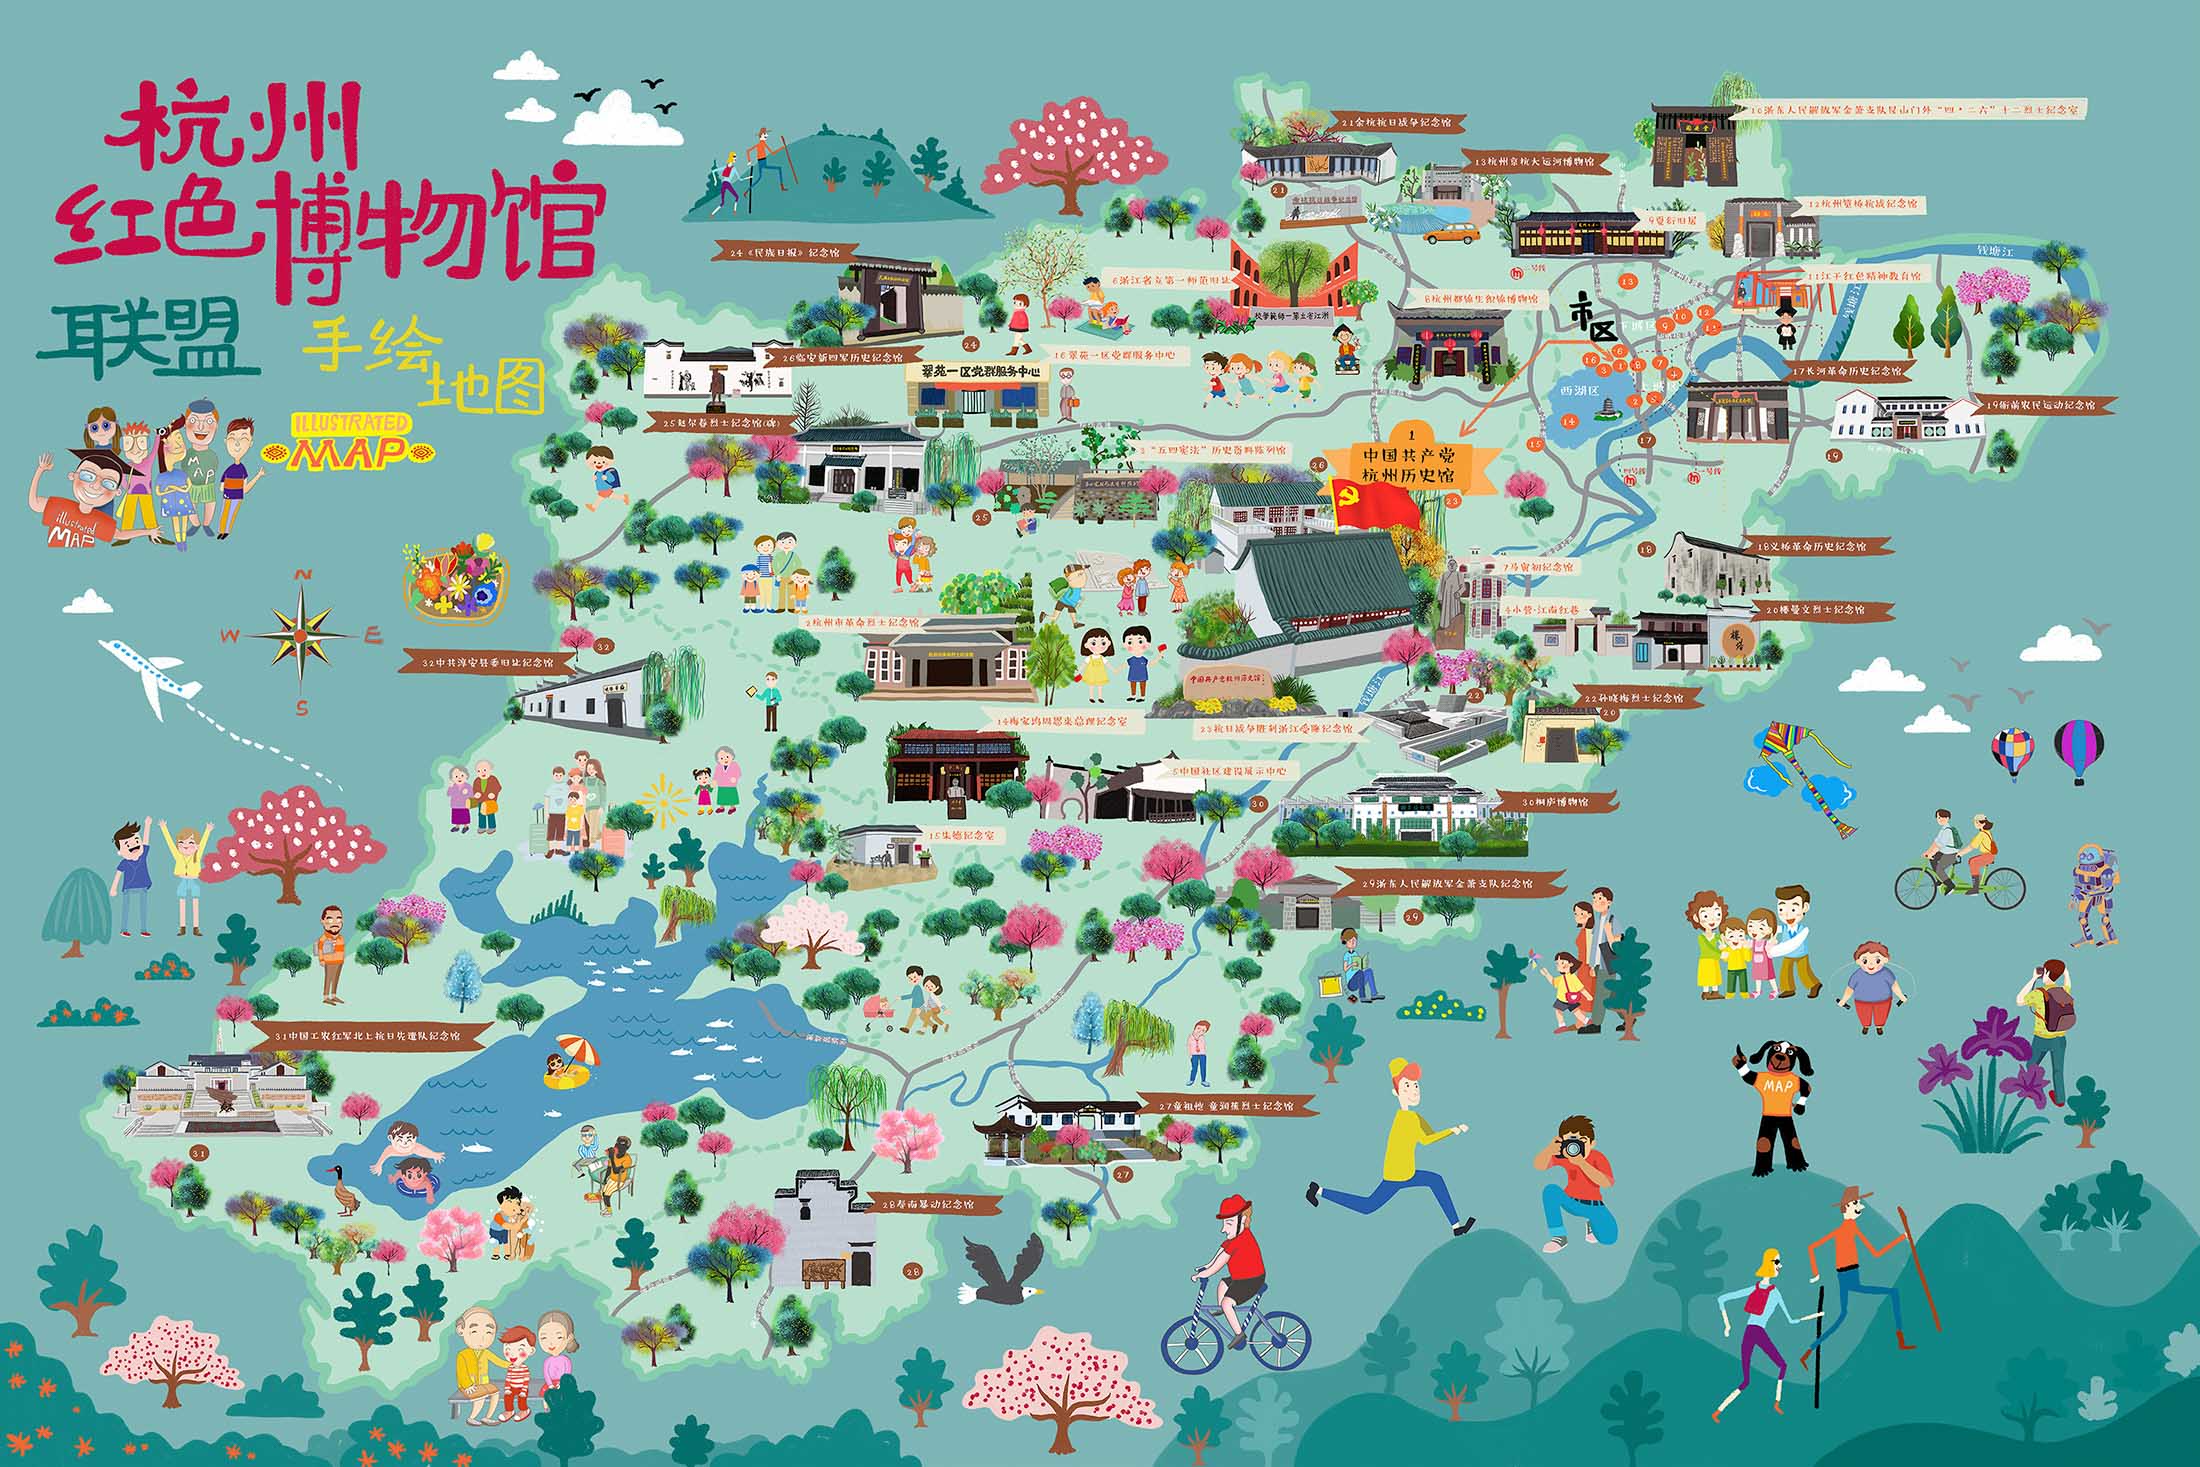 滨州手绘地图与科技的完美结合 